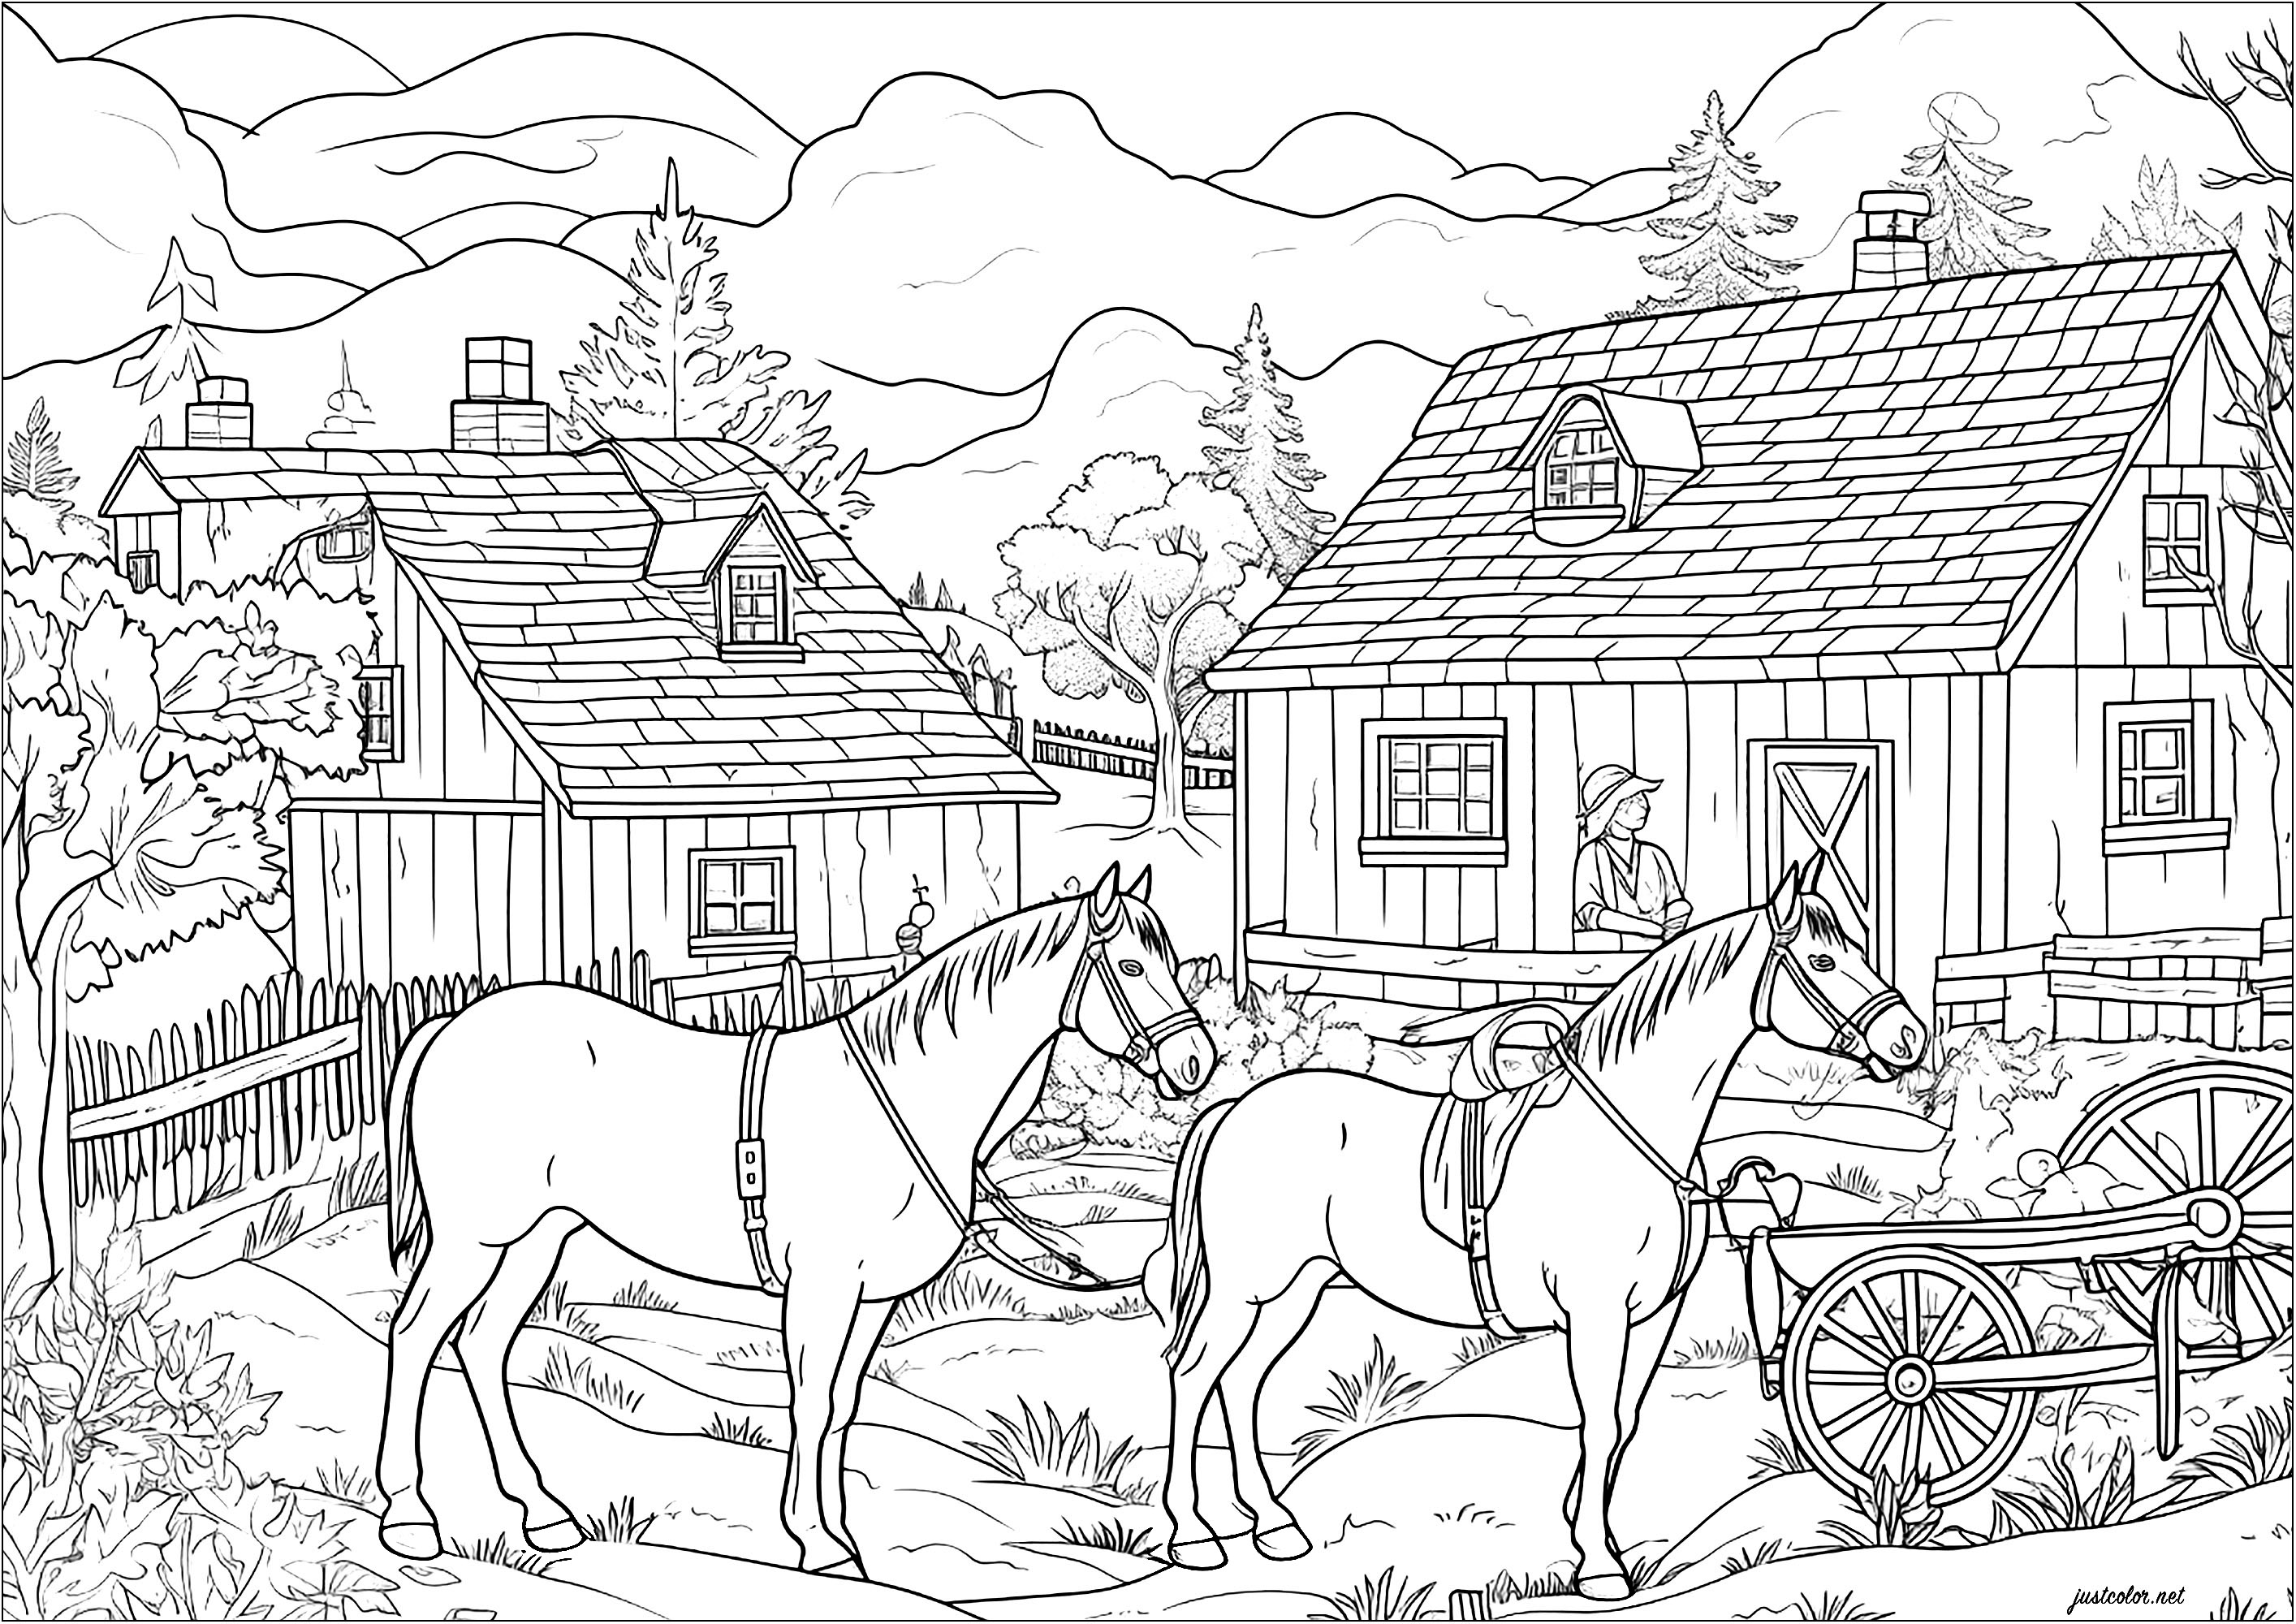 Zwei Pferde auf einem Bauernhof. Eine Malvorlage mit vielen Details